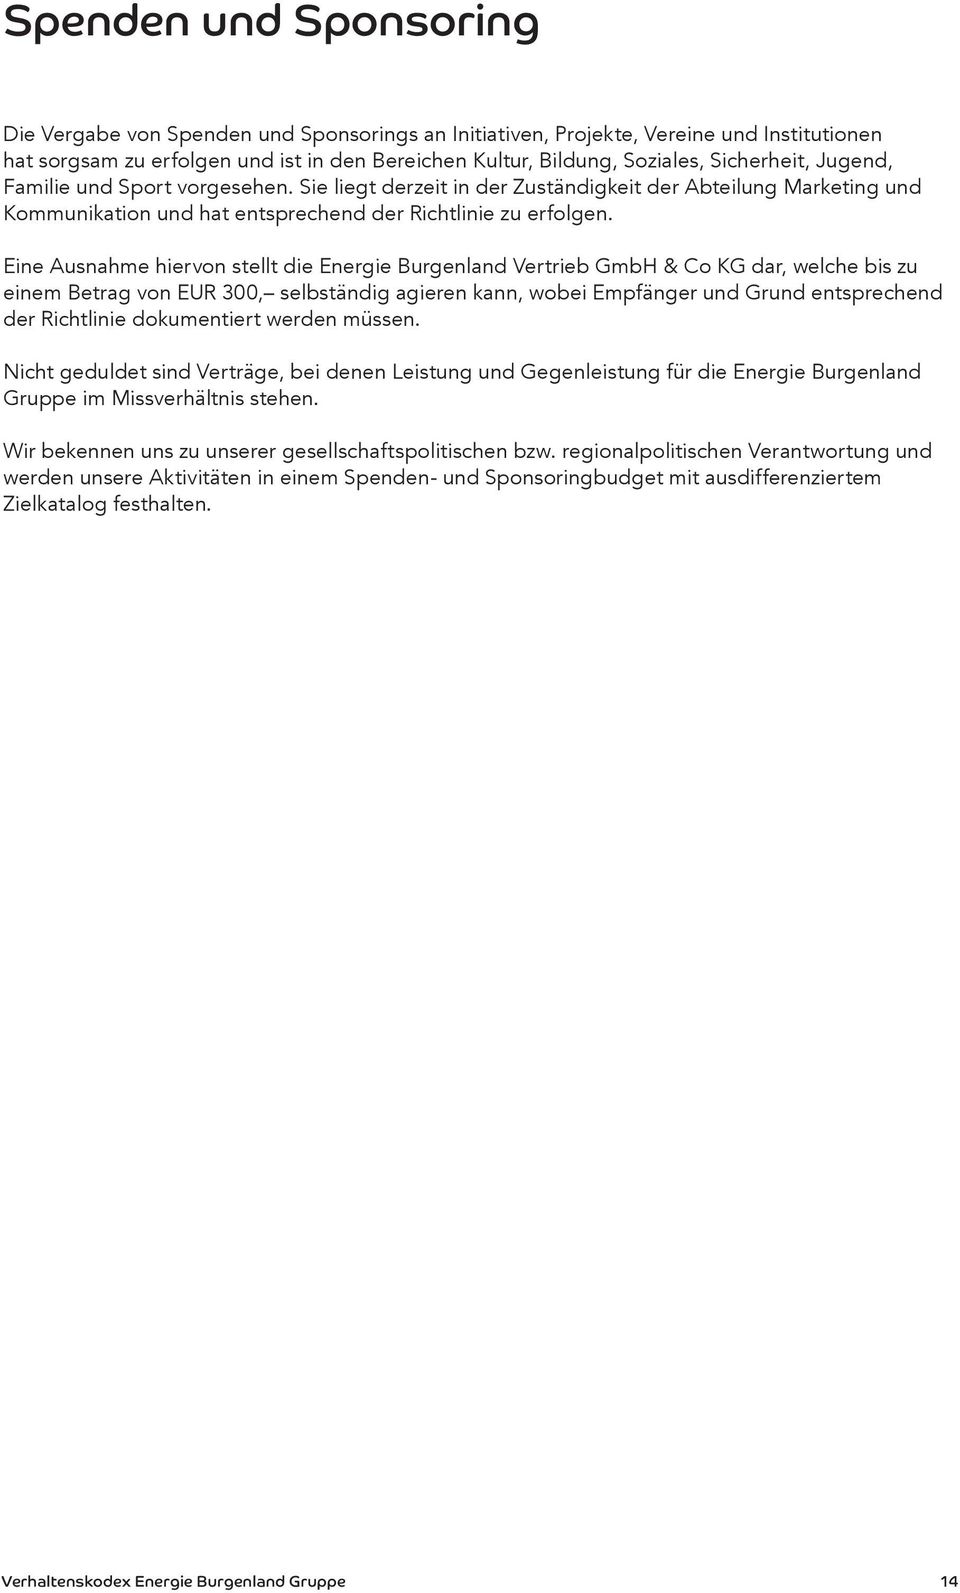 Eine Ausnahme hiervon stellt die Energie Burgenland Vertrieb GmbH & Co KG dar, welche bis zu einem Betrag von EUR 300, selbständig agieren kann, wobei Empfänger und Grund entsprechend der Richtlinie